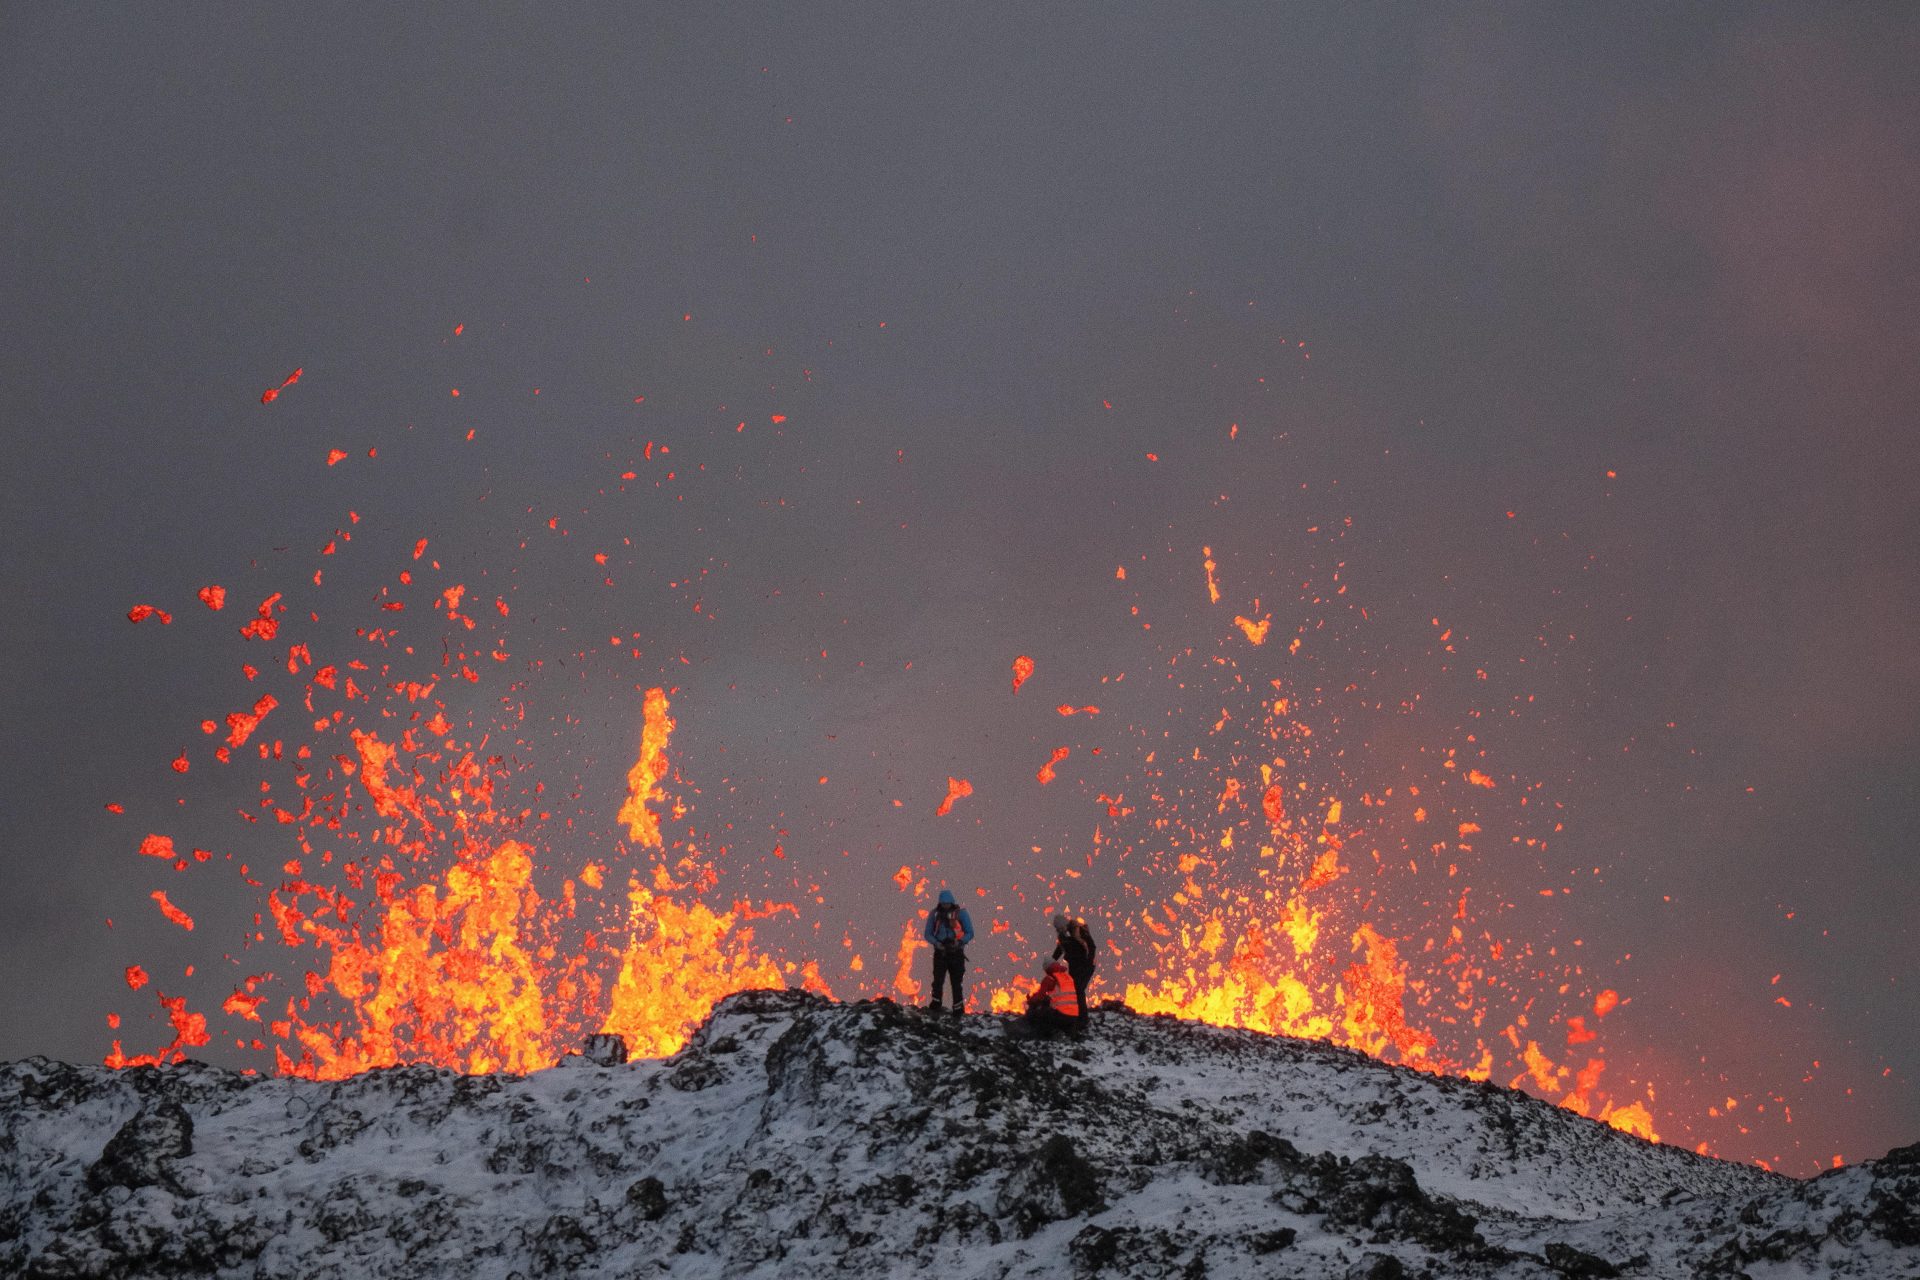 -FOTODELDÍA- EA2876. GRINDAVIK (ISLANDIA), 19/12/2023.- Un equipo de científicos trabaja hoy, en la cresta de una fisura volcánica mientras sale lava durante una erupción volcánica, cerca de la ciudad de Grindavik, en la península de Reykjanes (Islandia). La Oficina Meteorológica de Islandia (OMI) anunció el inicio de una erupción volcánica fisural cerca del cráter de Sundhnuka, al noreste de Grindavik, en la noche del 18 de diciembre, tras semanas de intensa actividad sísmica en la zona. La potencia y la actividad sísmica de la erupción han disminuido con el tiempo, informó la OMI el 19 de diciembre, añadiendo que se han registrado unos 320 seísmos desde el inicio de la erupción. EFE/EPA/ANTON BRINK